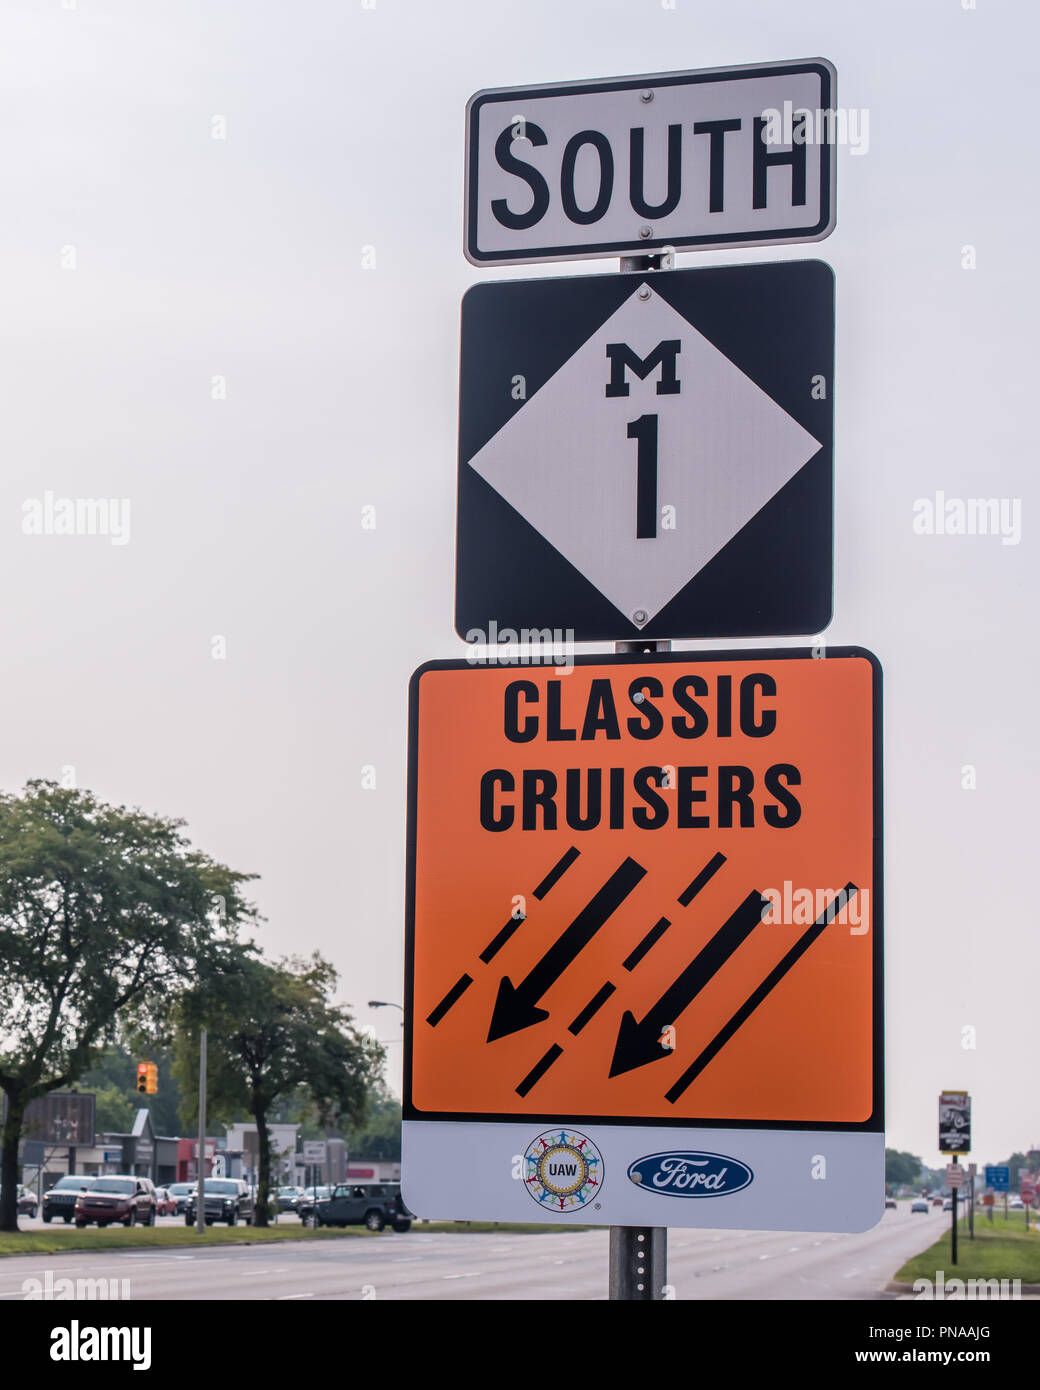 ROYAL OAK, MI/USA - 16 août 2018 : Un classique Cruisers / United Auto Workers (UAW) / Ford / M1 signe sur l'itinéraire de croisière de rêve Woodward. Banque D'Images